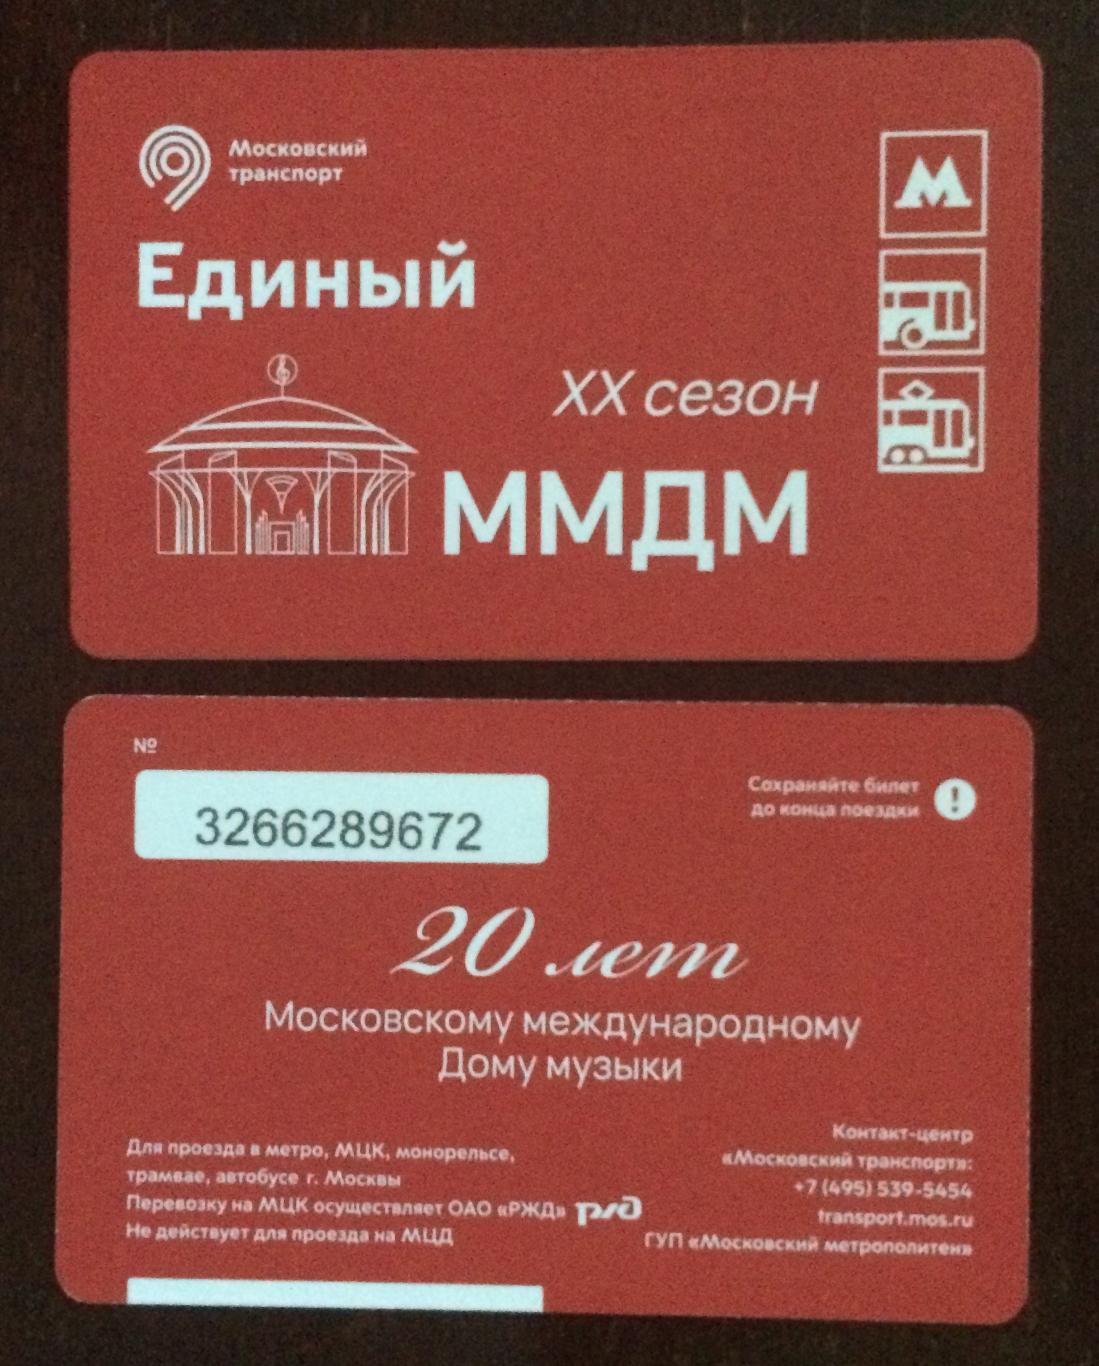 Билет Метро Единый 20 лет Московскому международному Дому музыки 2022 год